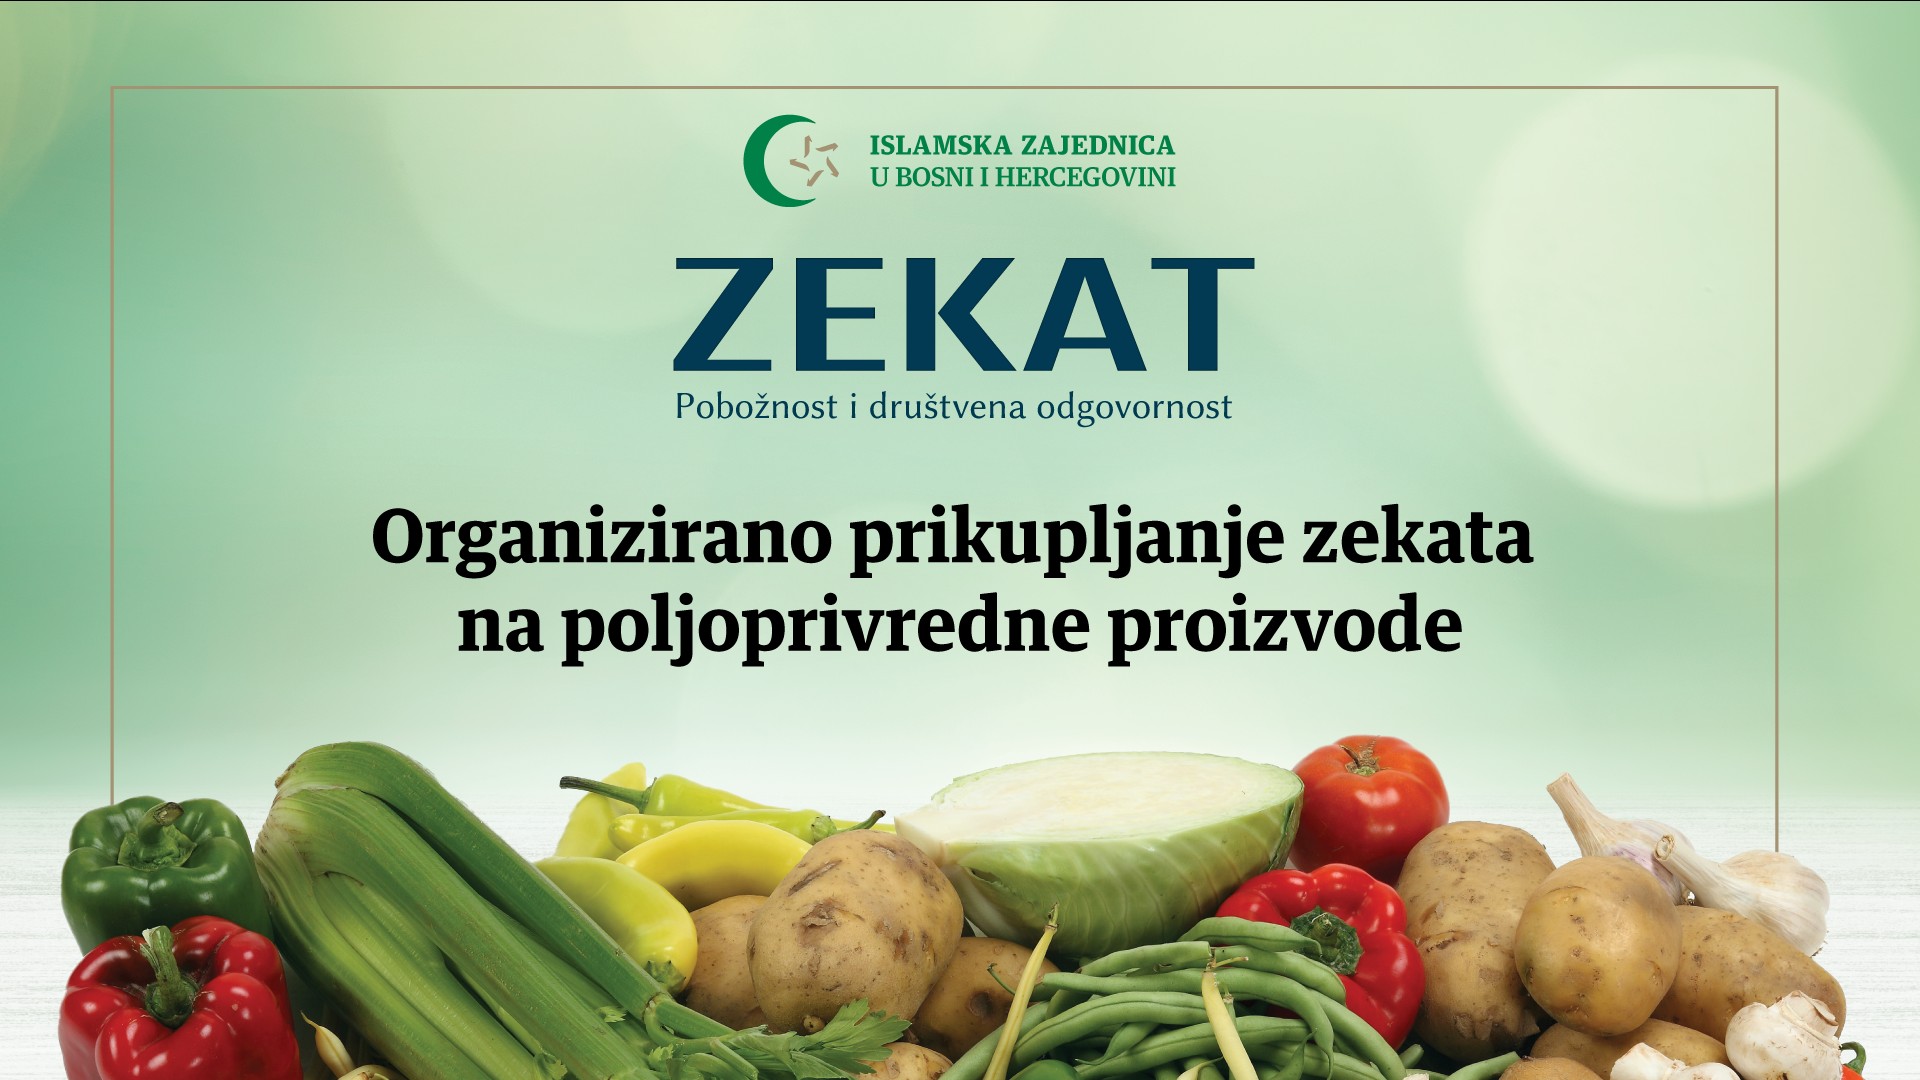 Akcija prikupljanja zekata na poljoprivredne proizvode u periodu od 17.09. do 02.10.2022. godine